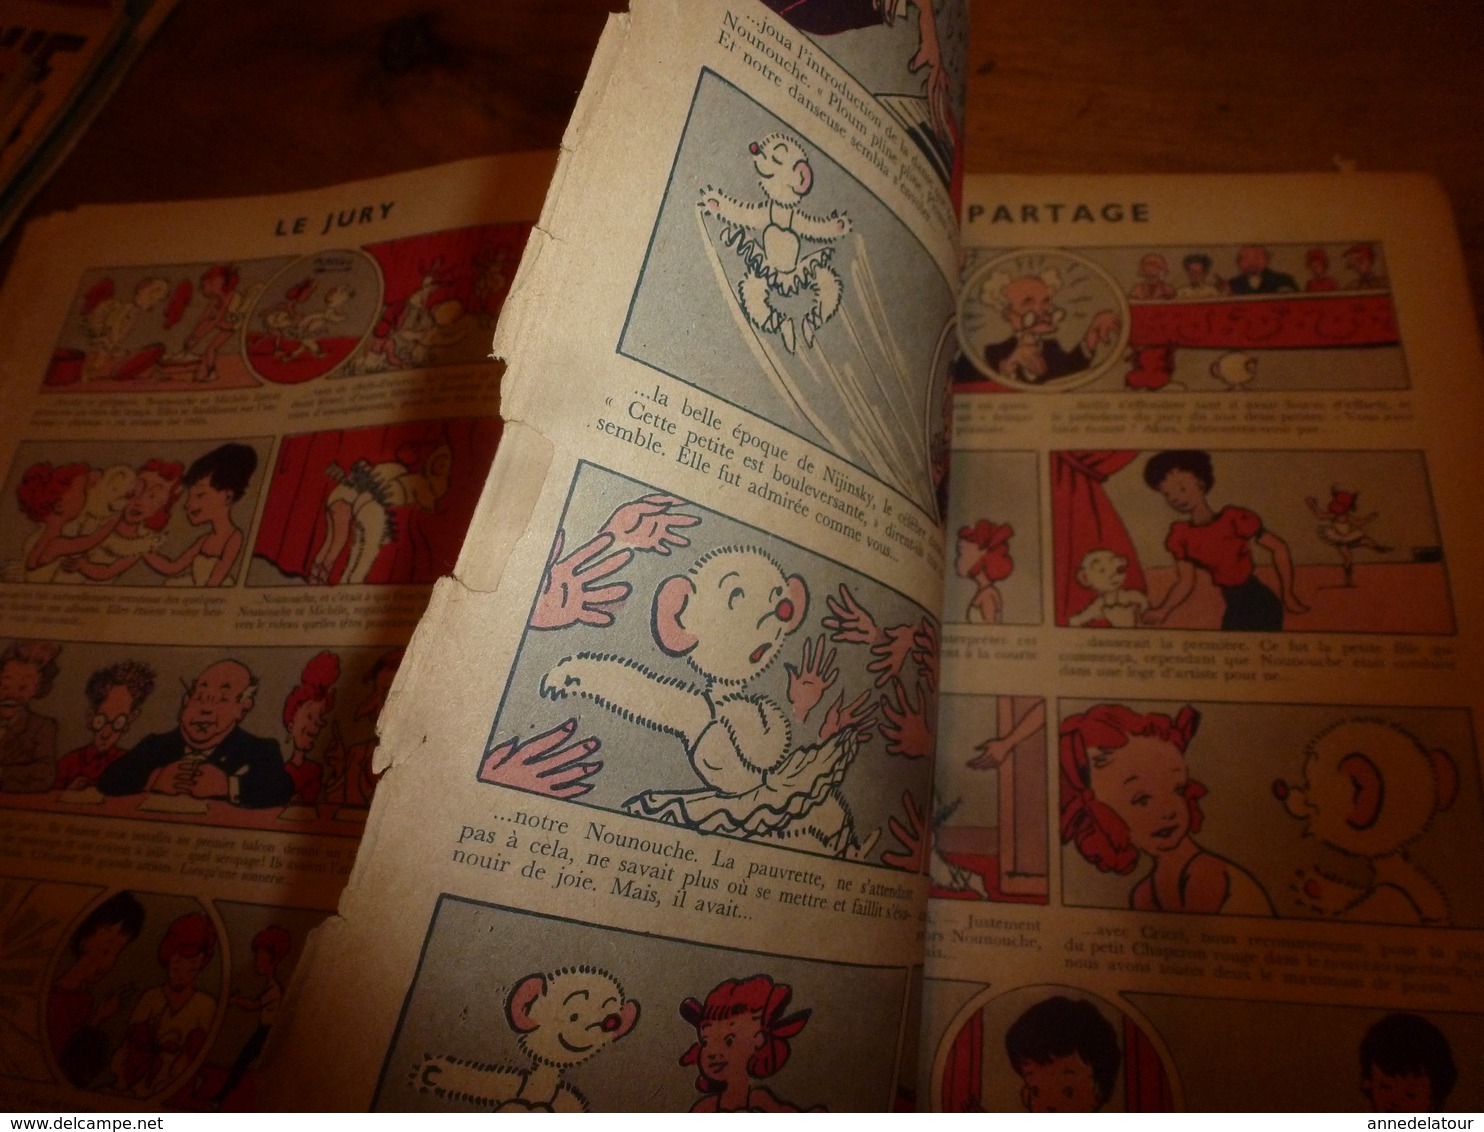 1953 NOUNOUCHE petite danseuse,   texte et dessins de DURST